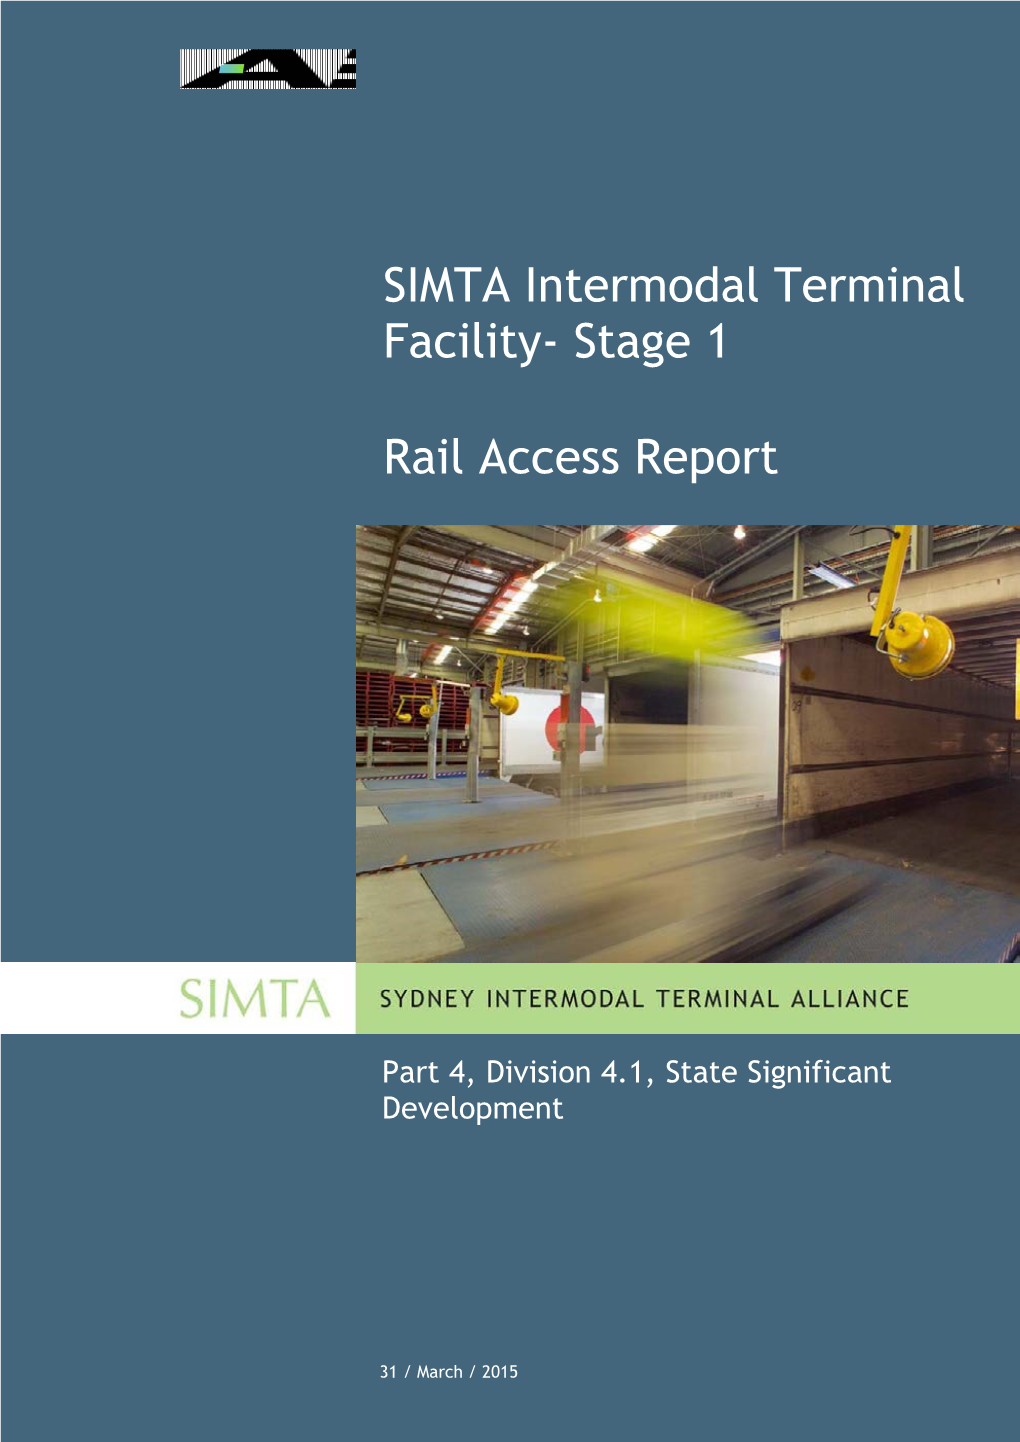 SIMTA Intermodal Terminal Facility- Stage 1 Rail Access Report